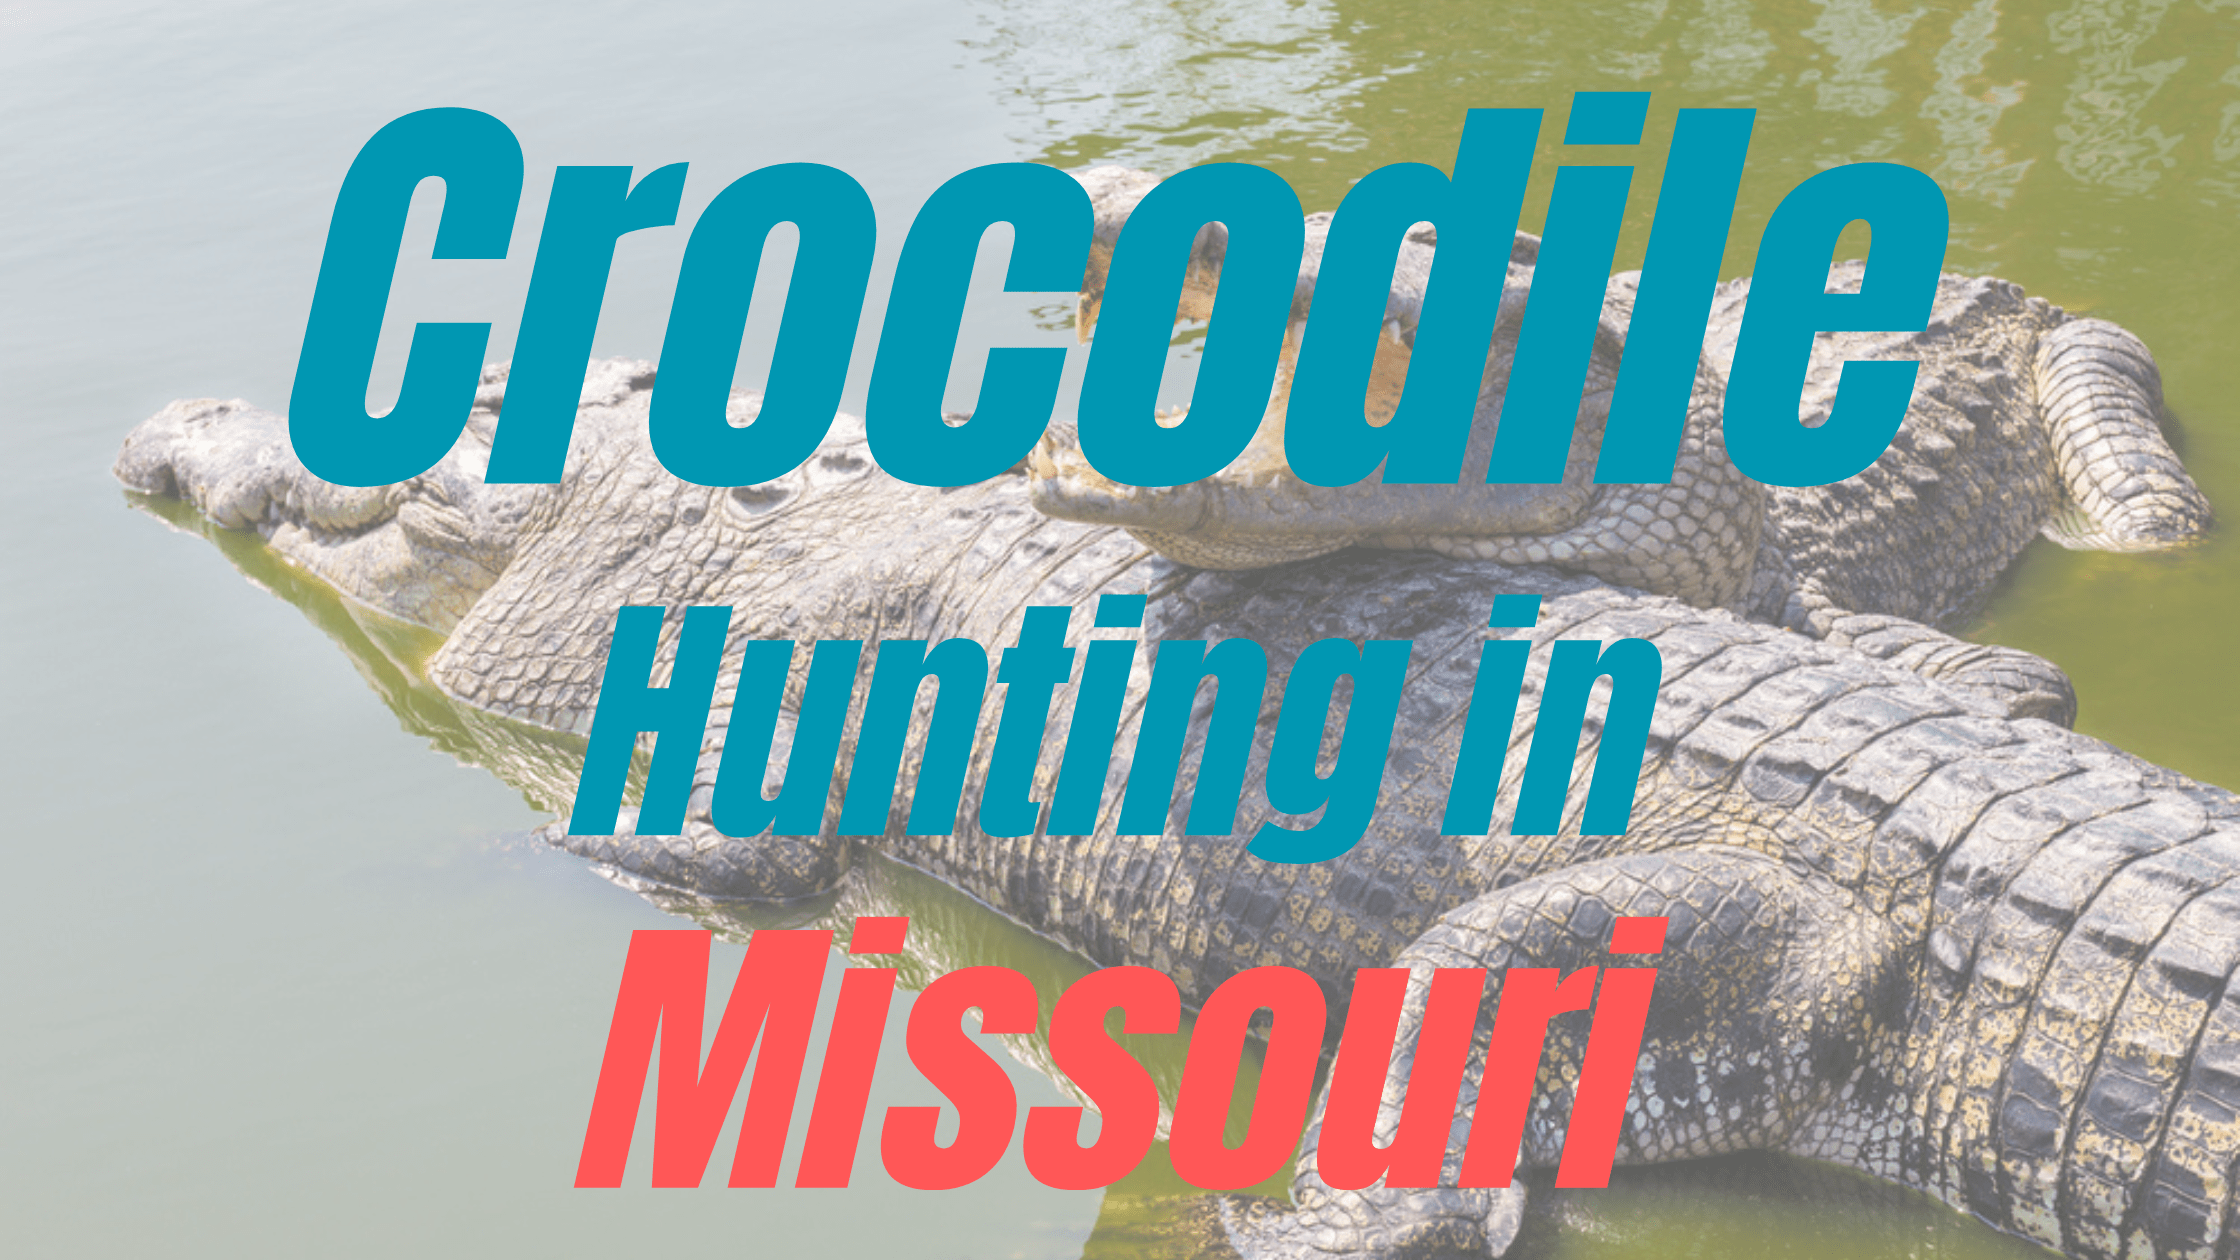 Crocodile Hunting in Missouri